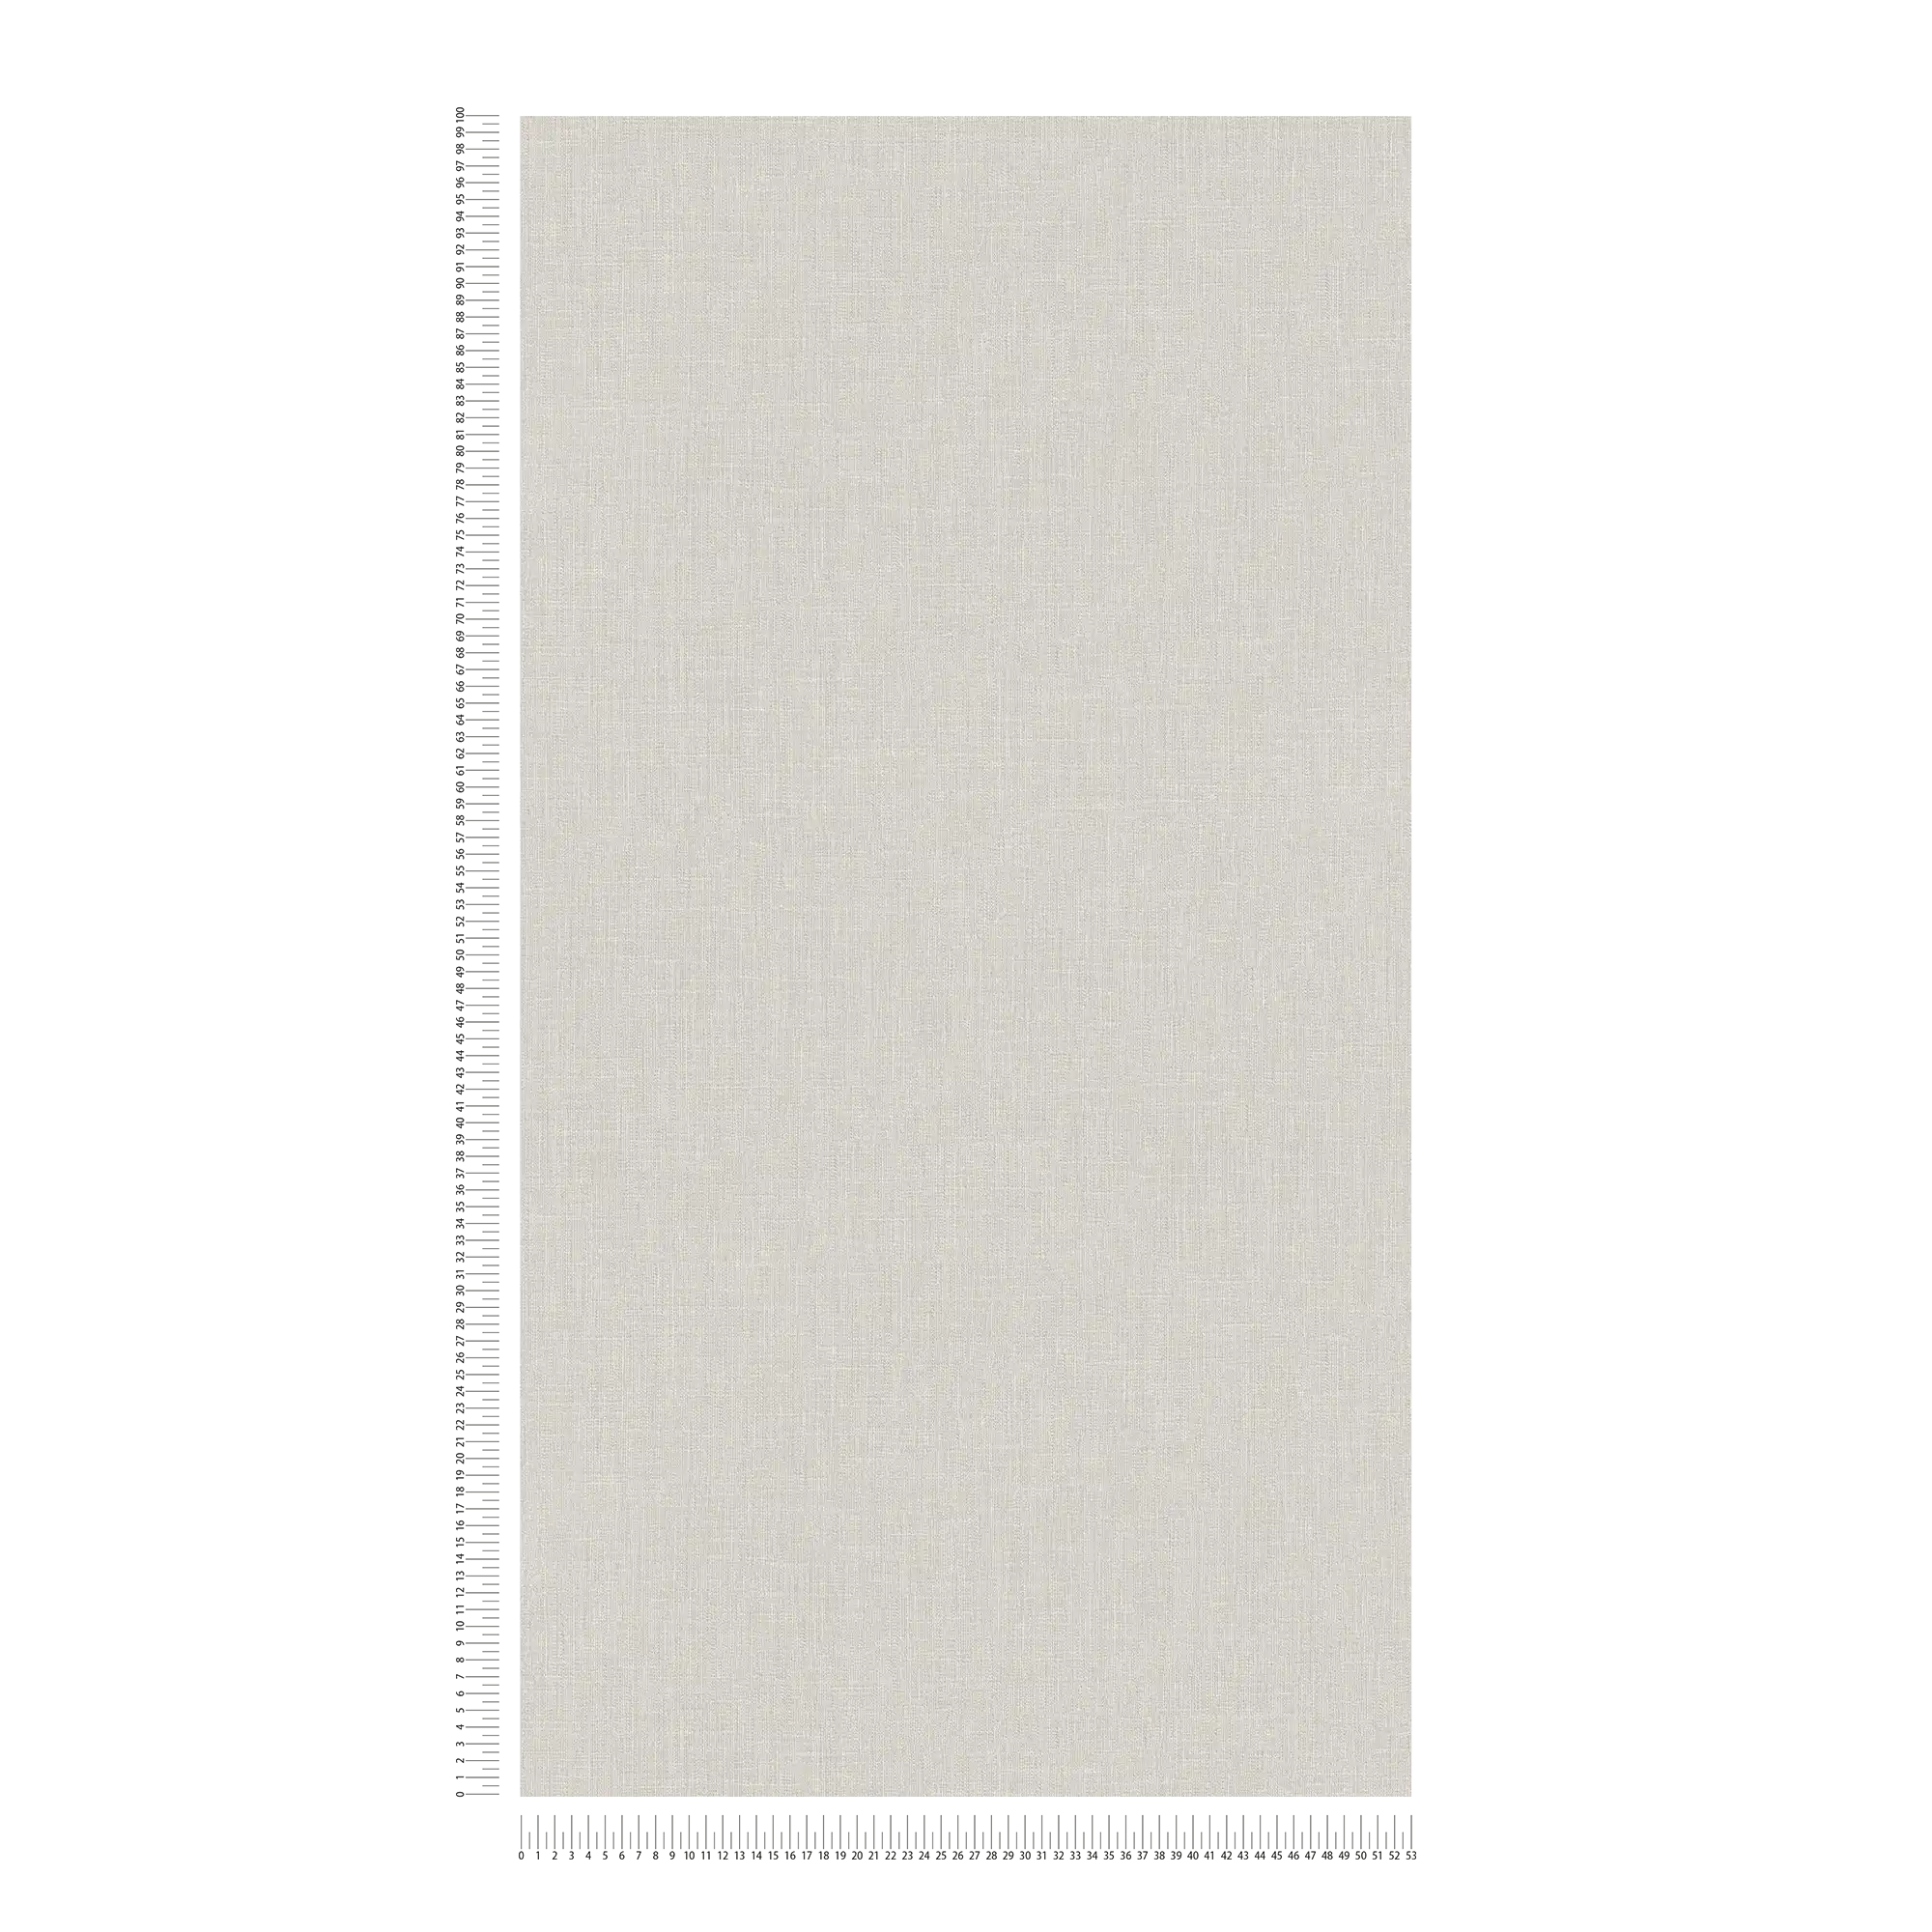             Carta da parati in tessuto non tessuto grigio chiaro con aspetto tessile e motivo strutturato
        